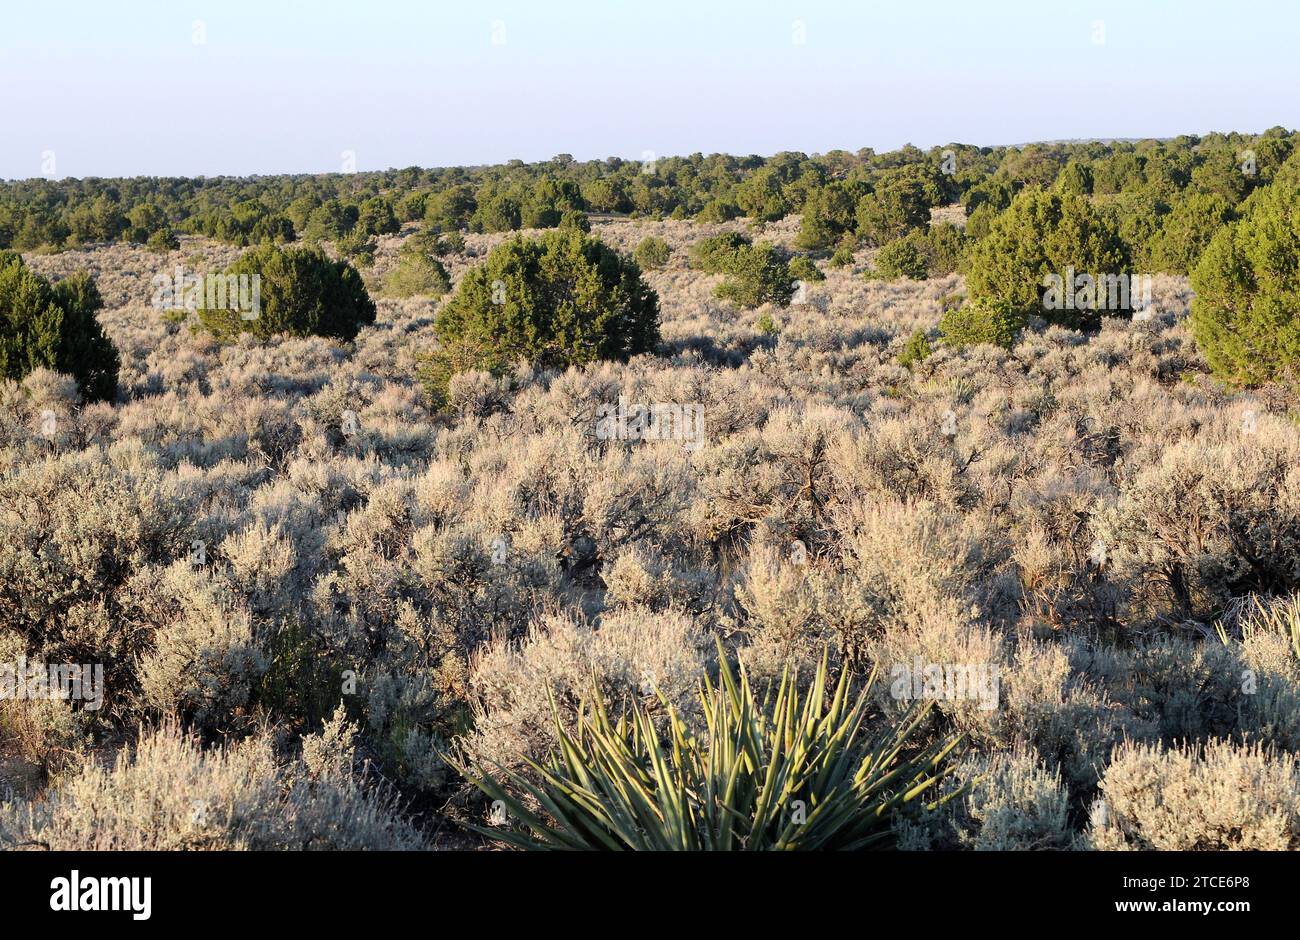 Big Sagebrush (Artemisia tridentata) ist ein großer Sträucher, der im Westen der USA beheimatet ist. Am unteren westlichen Wacholder (Juniperus occidentalis). Dieses Foto wurde von mir gemacht Stockfoto